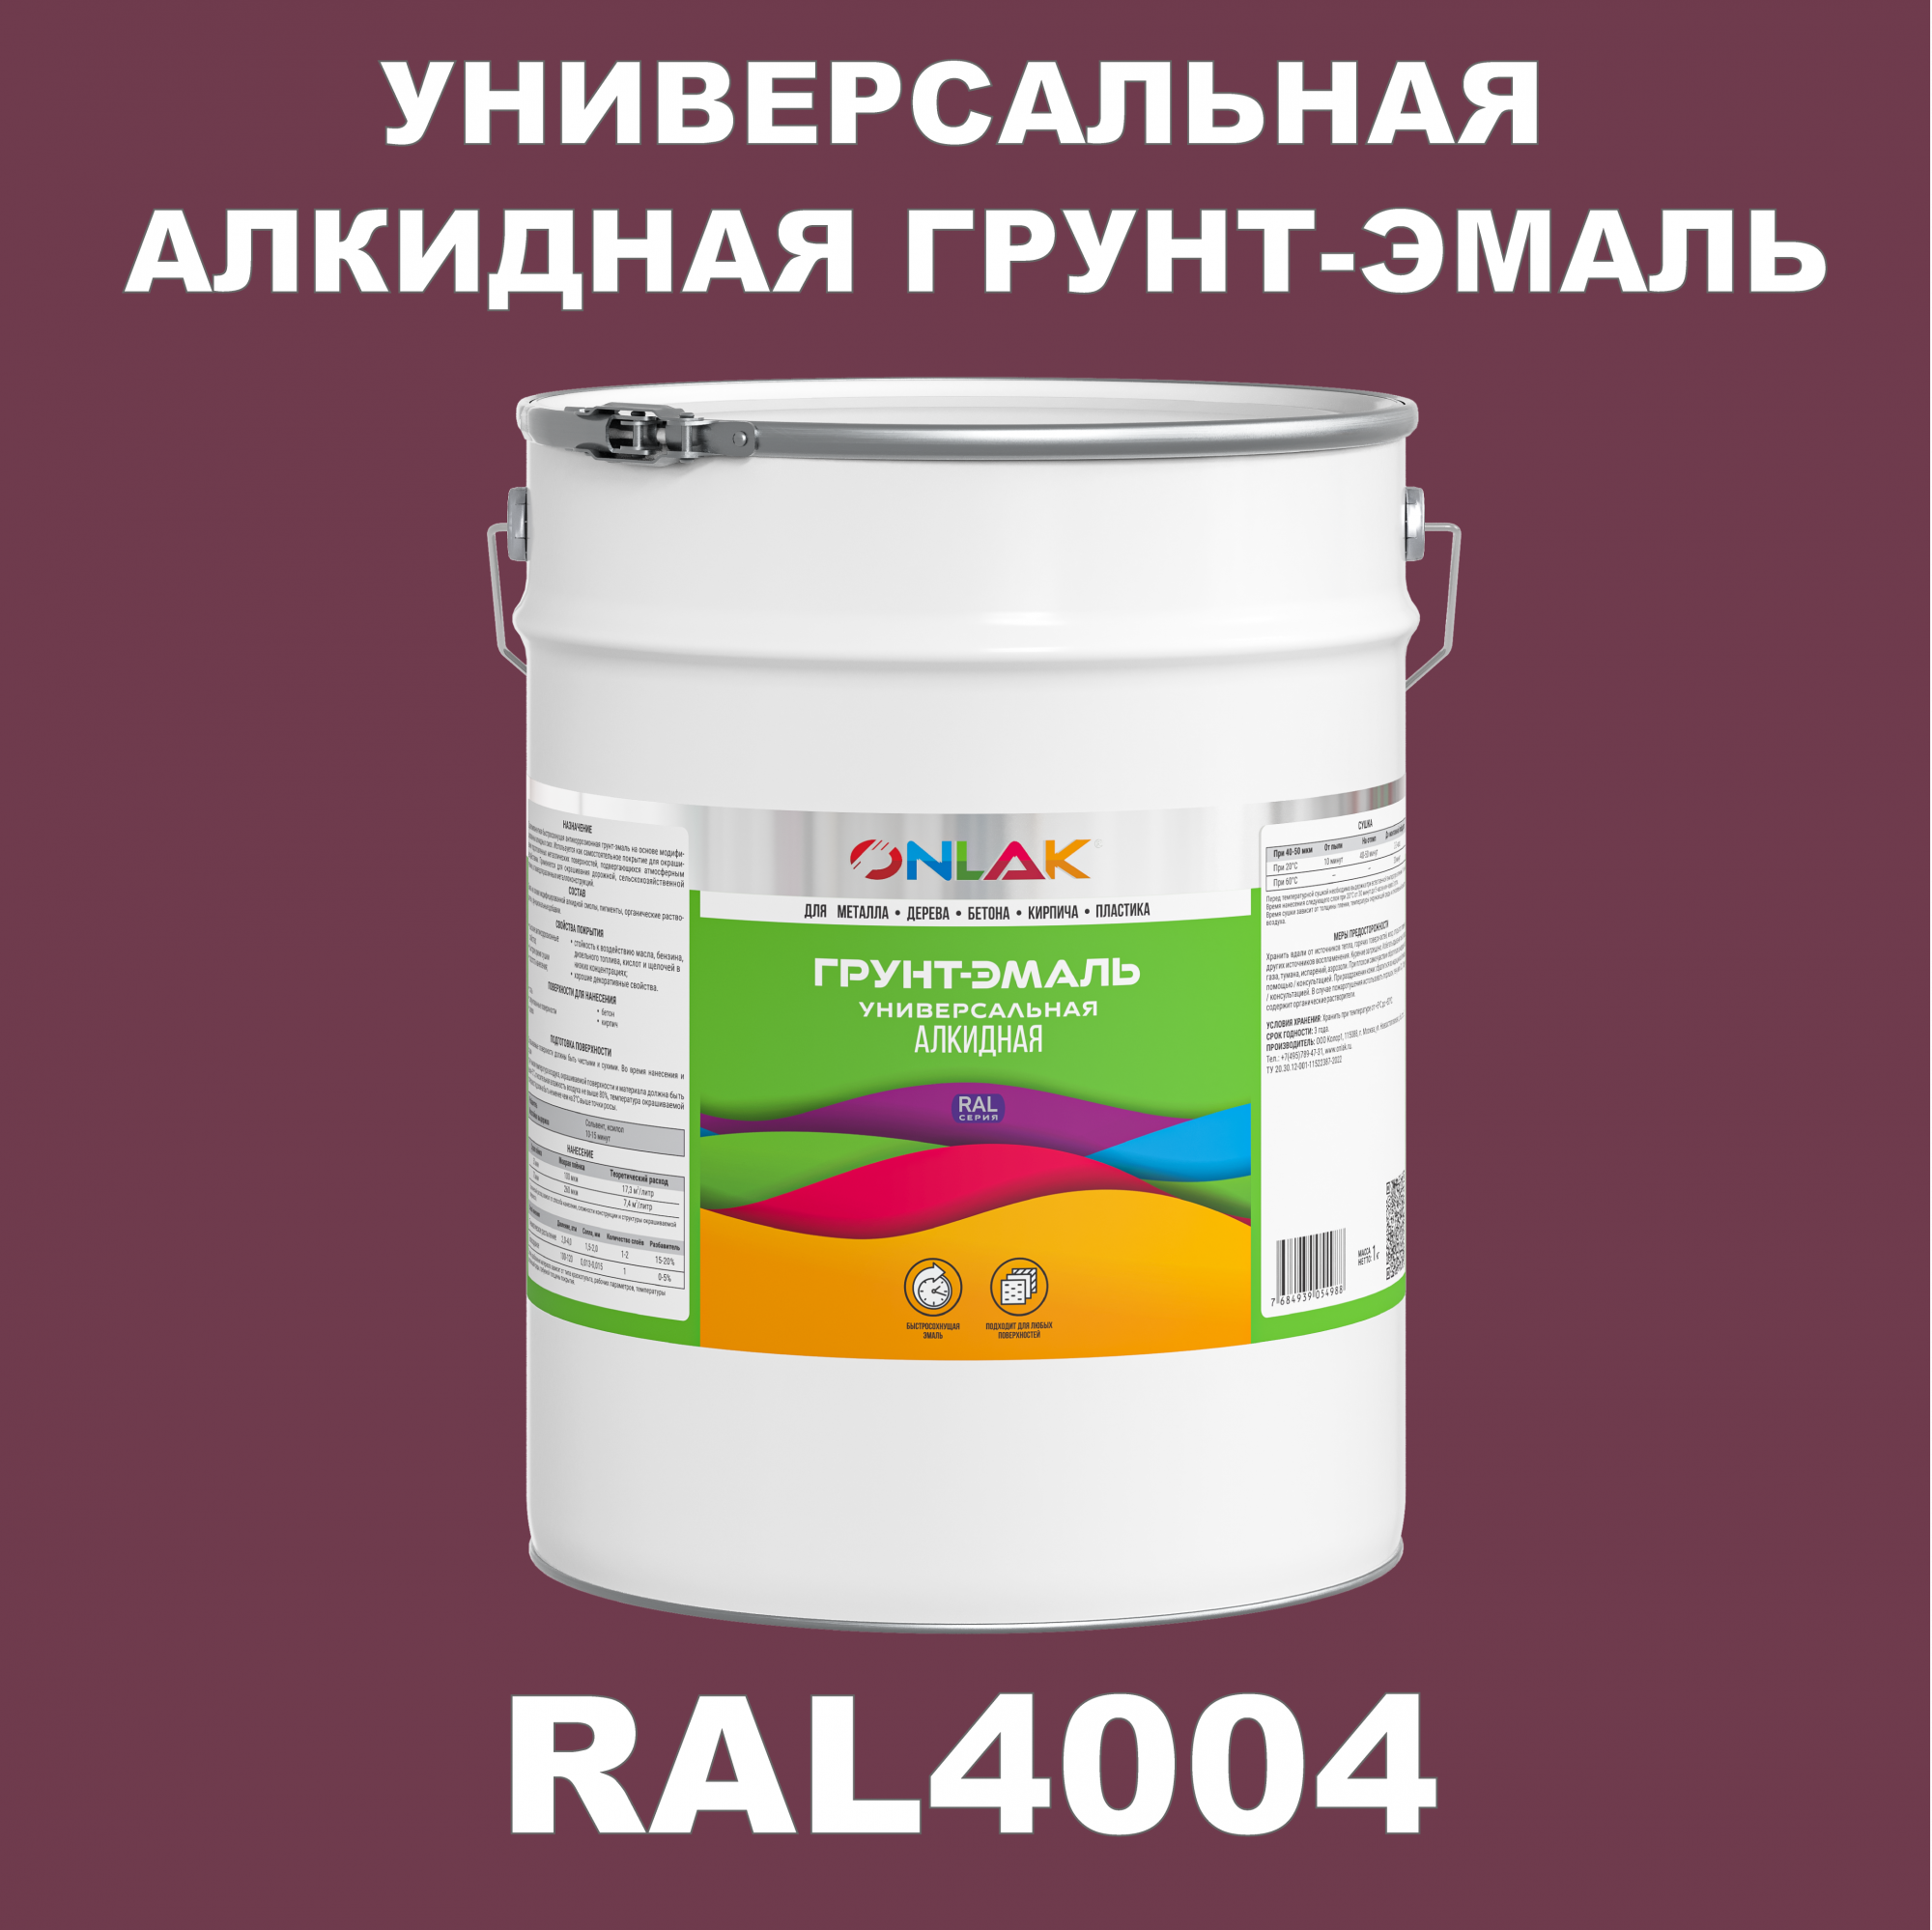 Грунт-эмаль ONLAK 1К RAL4004 антикоррозионная алкидная по металлу по ржавчине 20 кг антикоррозионная грунт эмаль onlak ral 4002 фиолетовый 720 мл